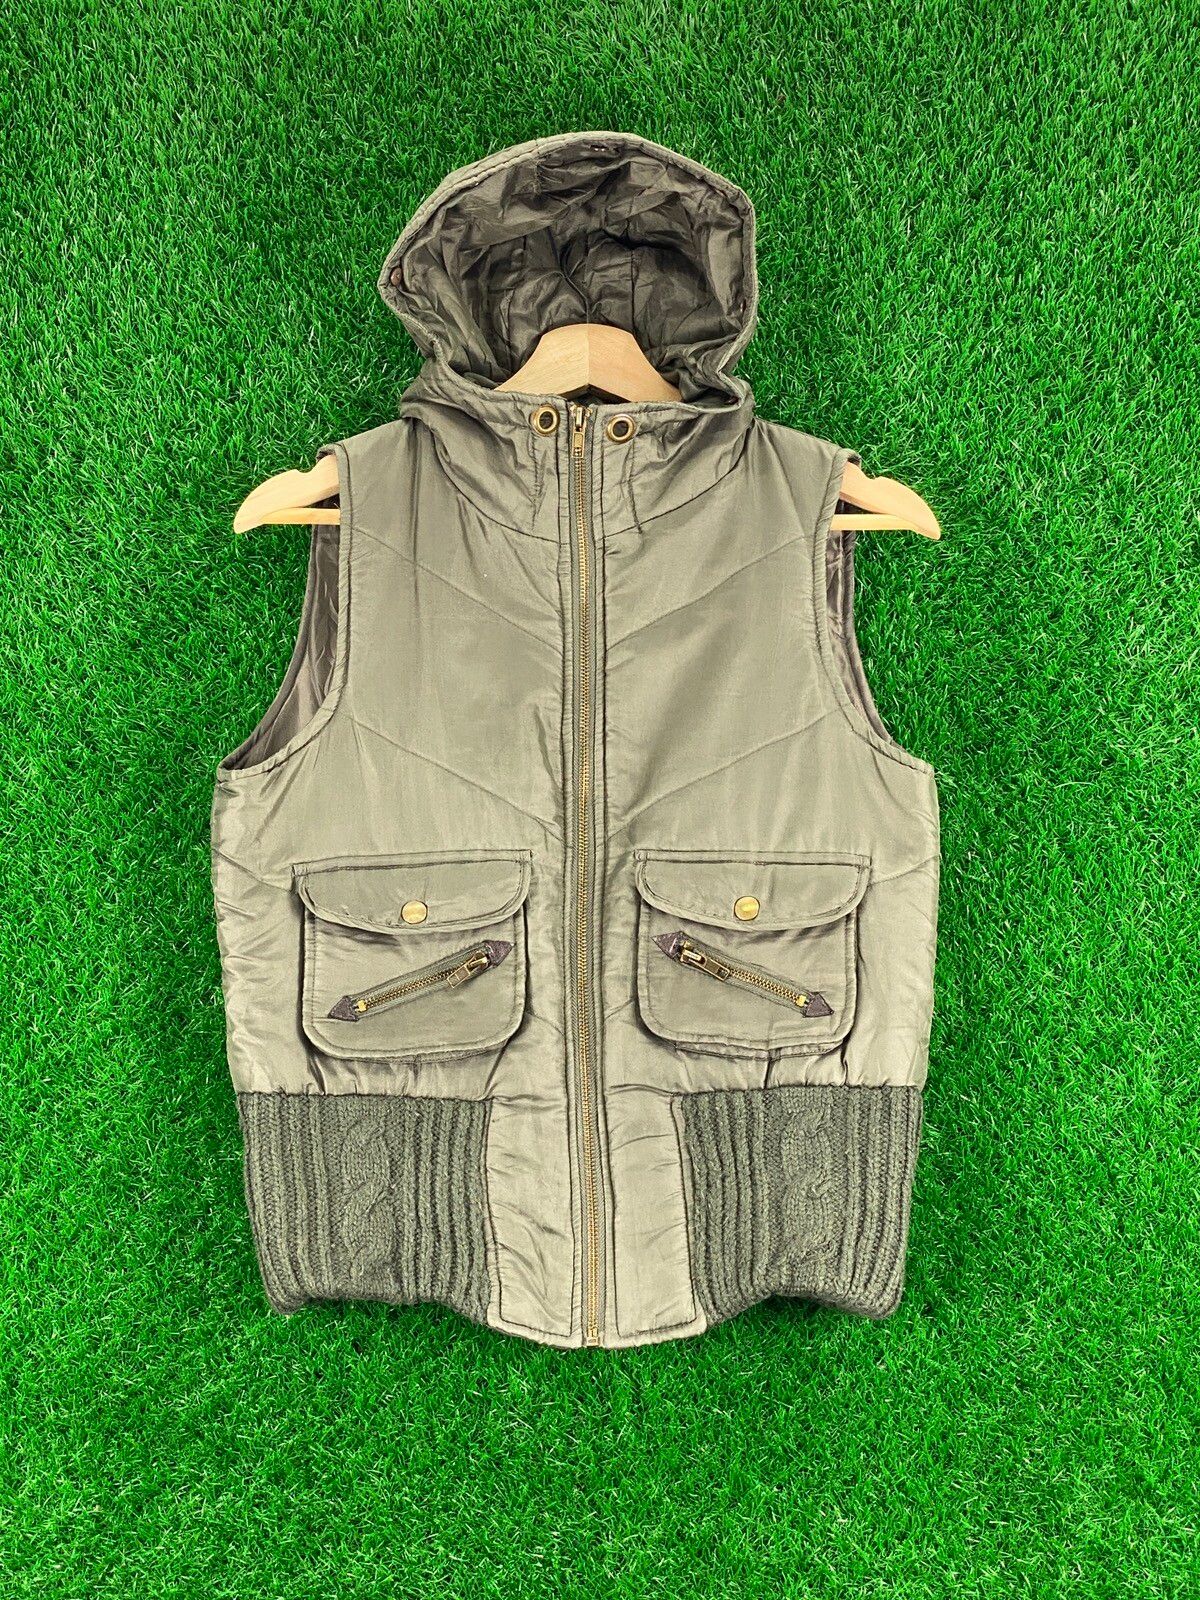 Vintage ‼️OFFER‼️Vintage Japanese Vest Hoodie By Hudson Size US S / EU 44-46 / 1 - 1 Preview